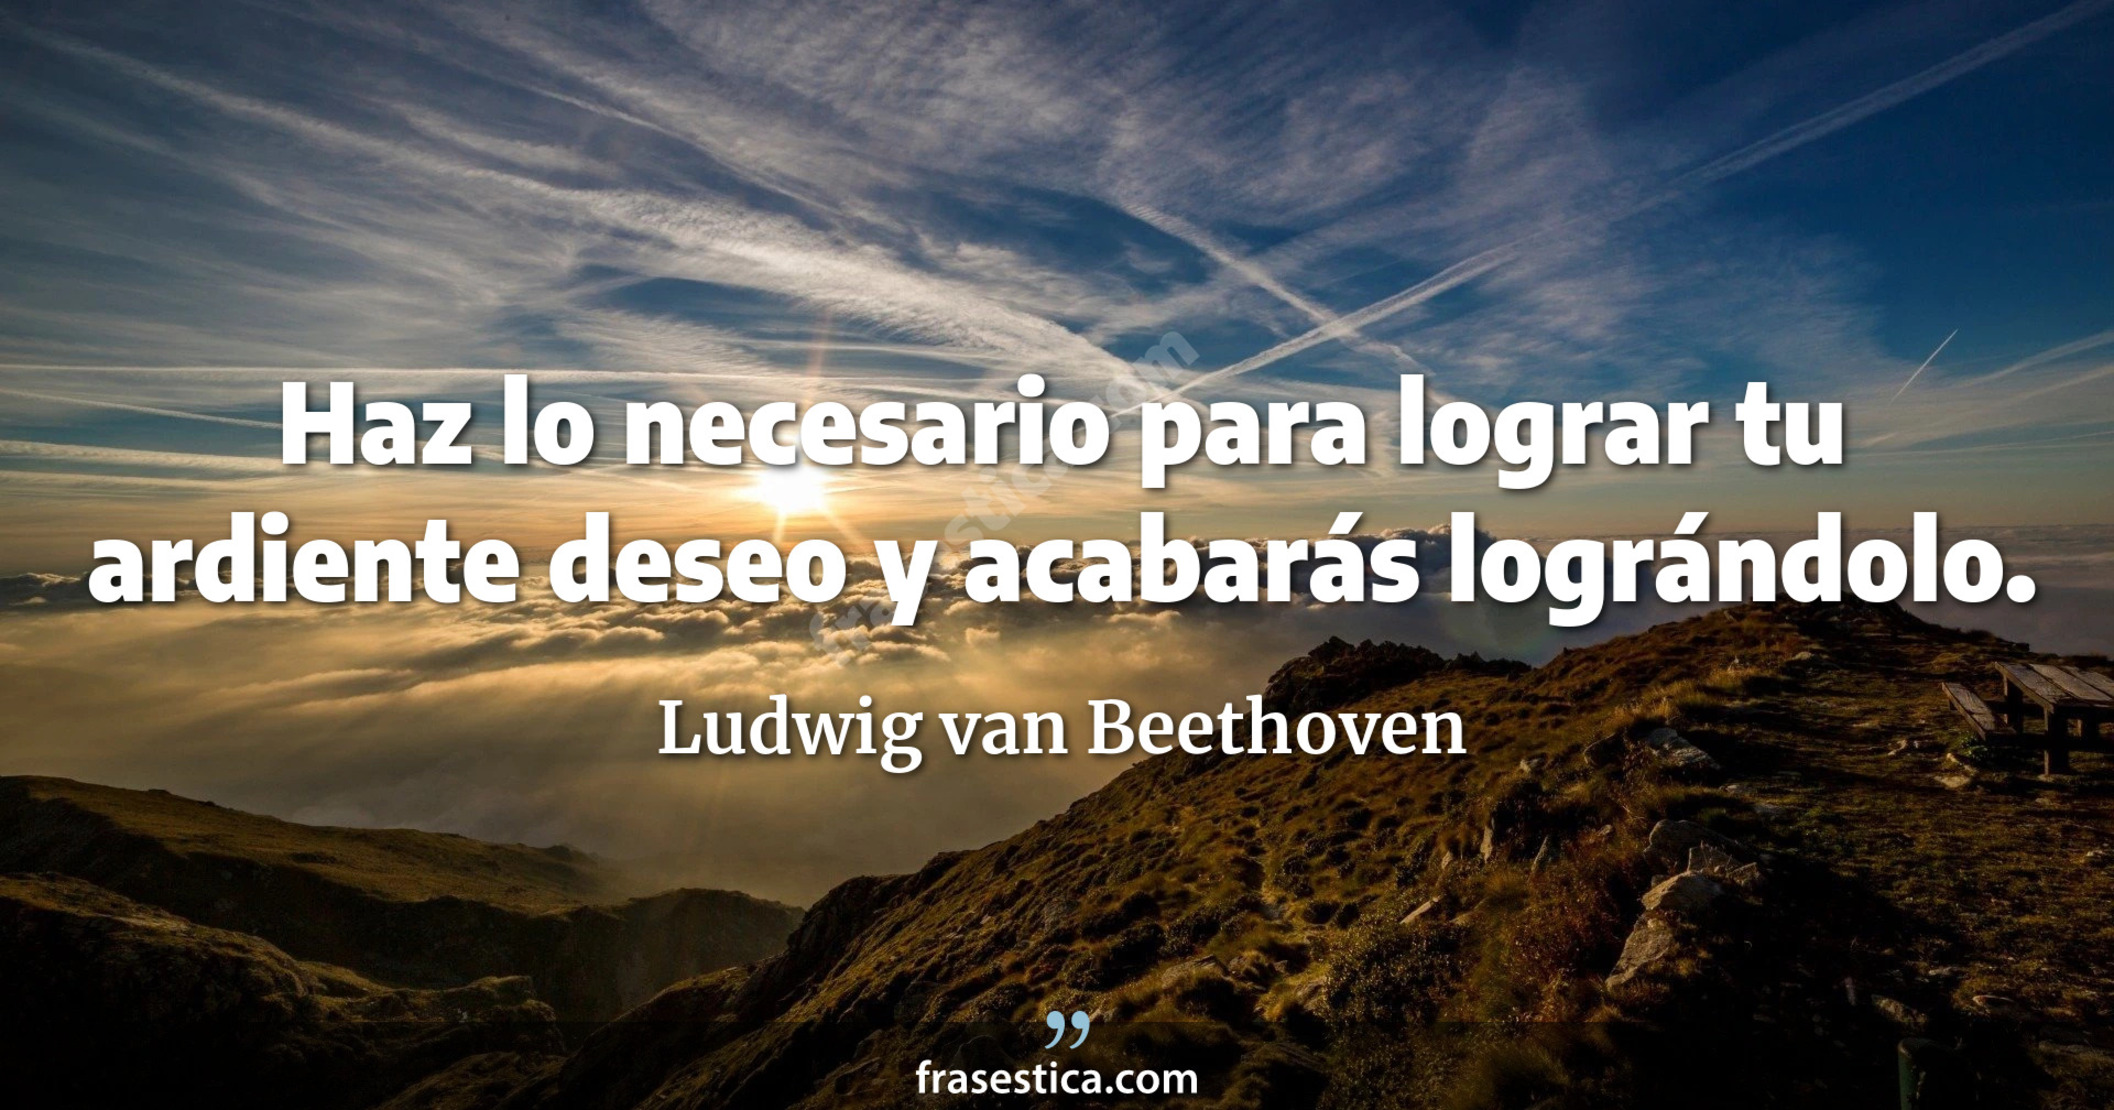 Haz lo necesario para lograr tu ardiente deseo y acabarás  lográndolo. - Ludwig van Beethoven